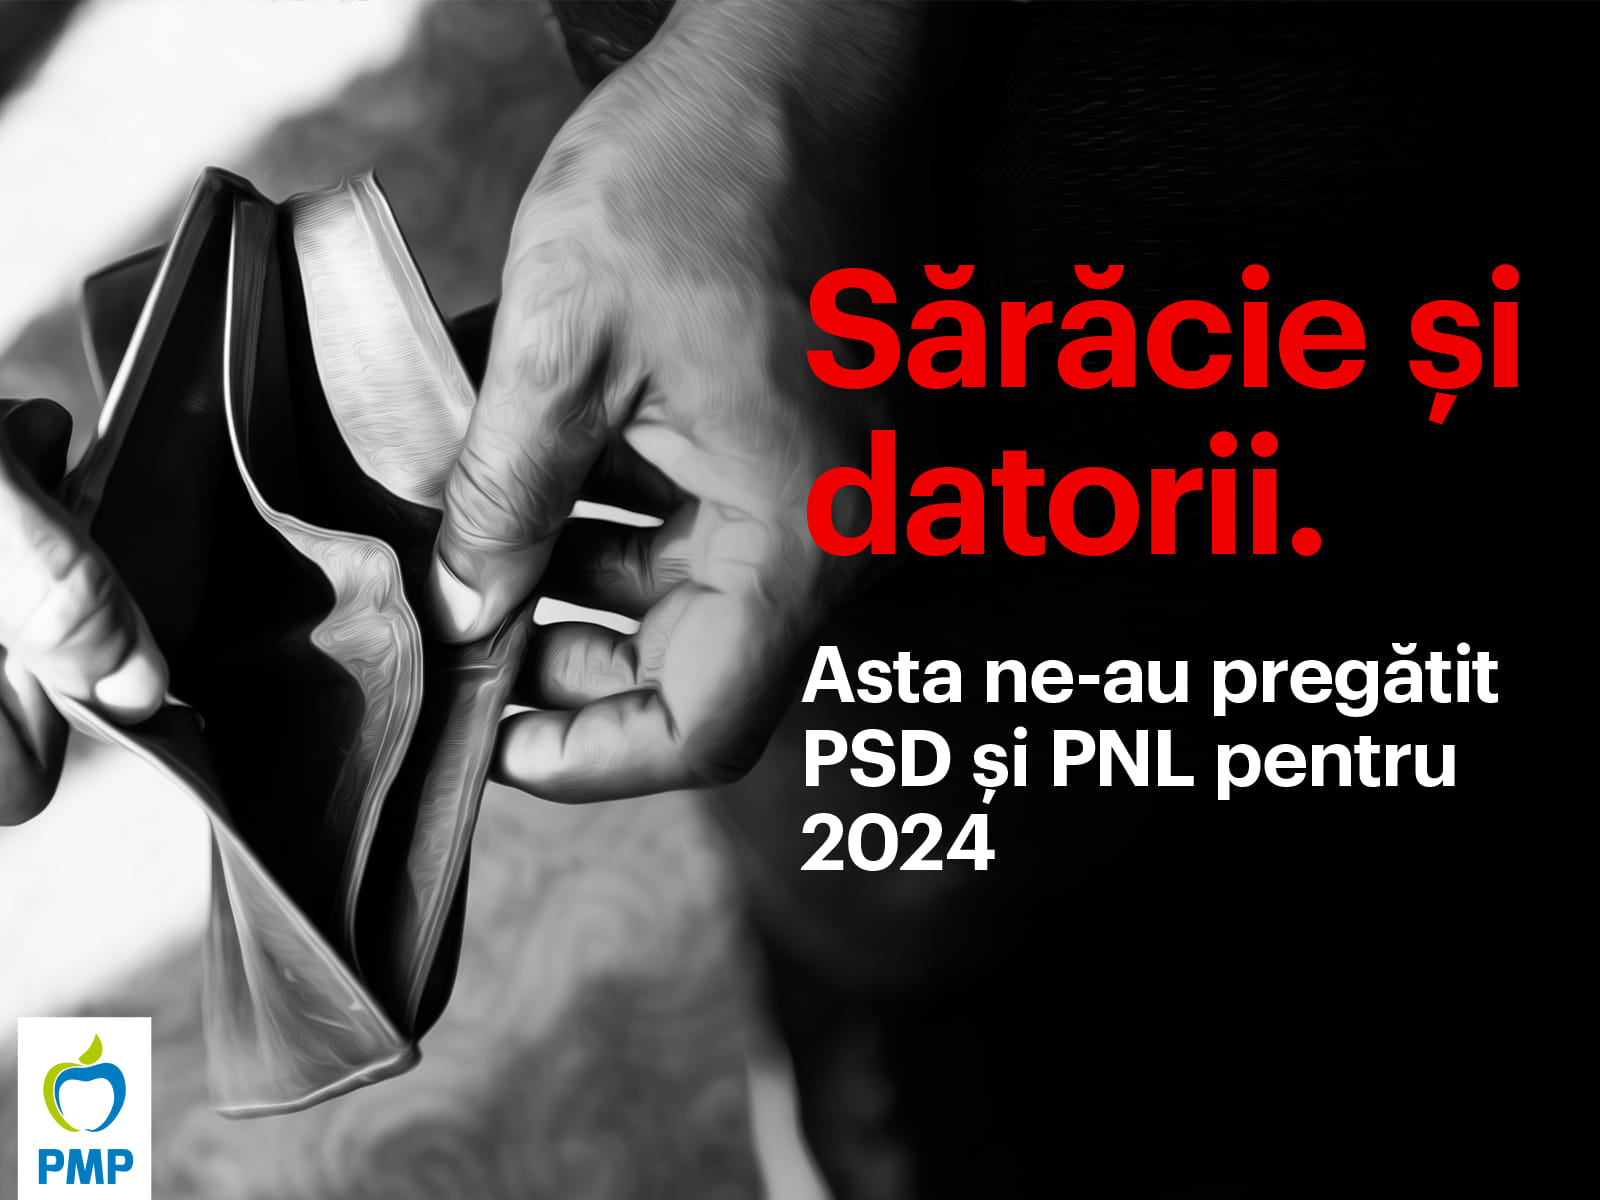 PSD şi PNL au pregătit pentru România anului 2024 un buget al sărăciei şi îndatorării